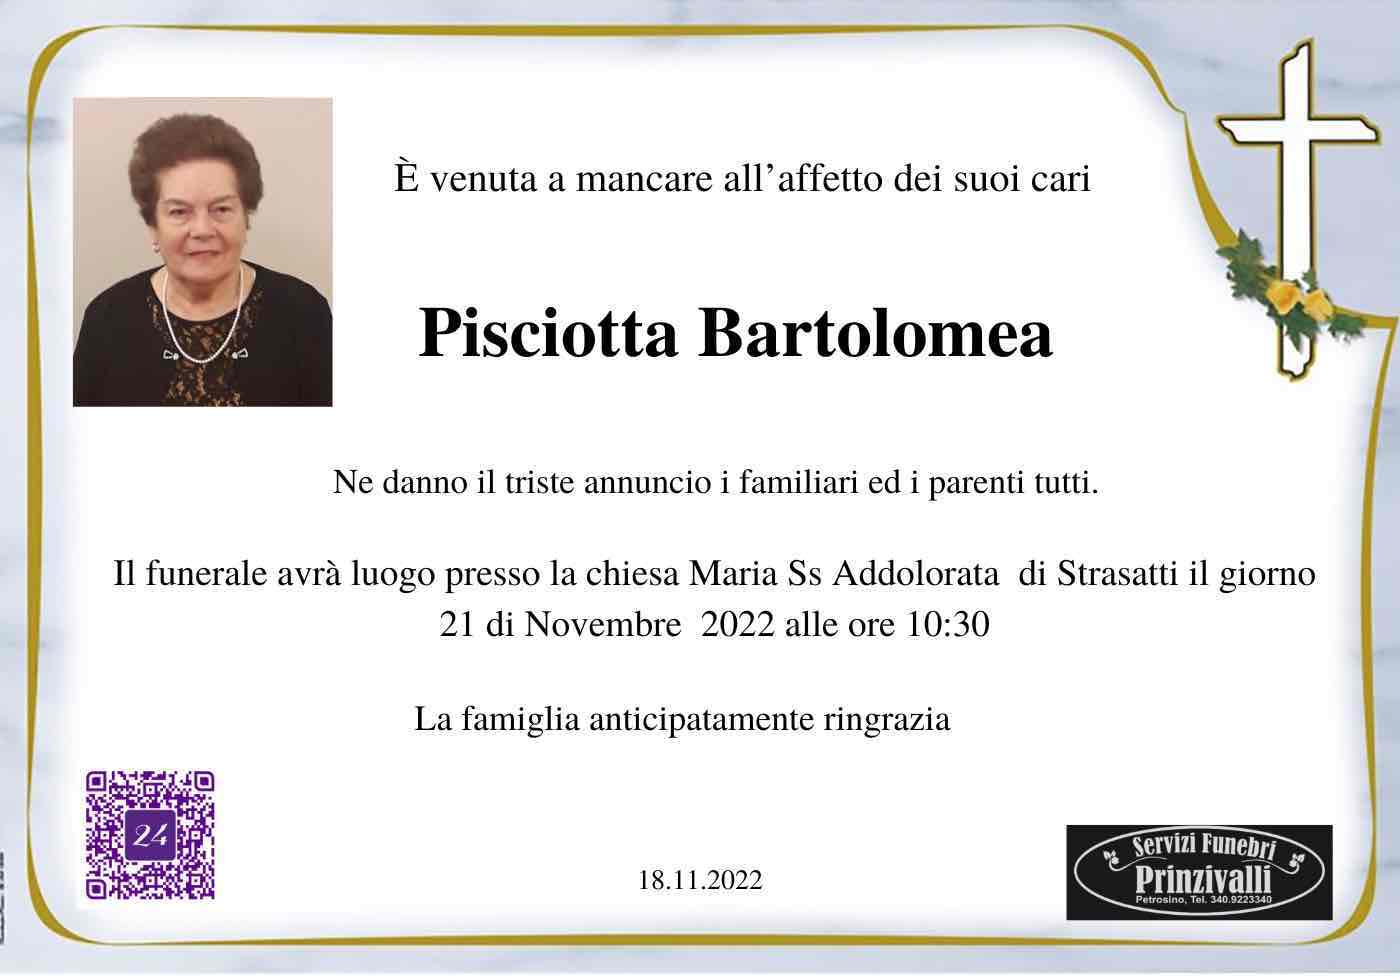 Bartolomea Pisciotta